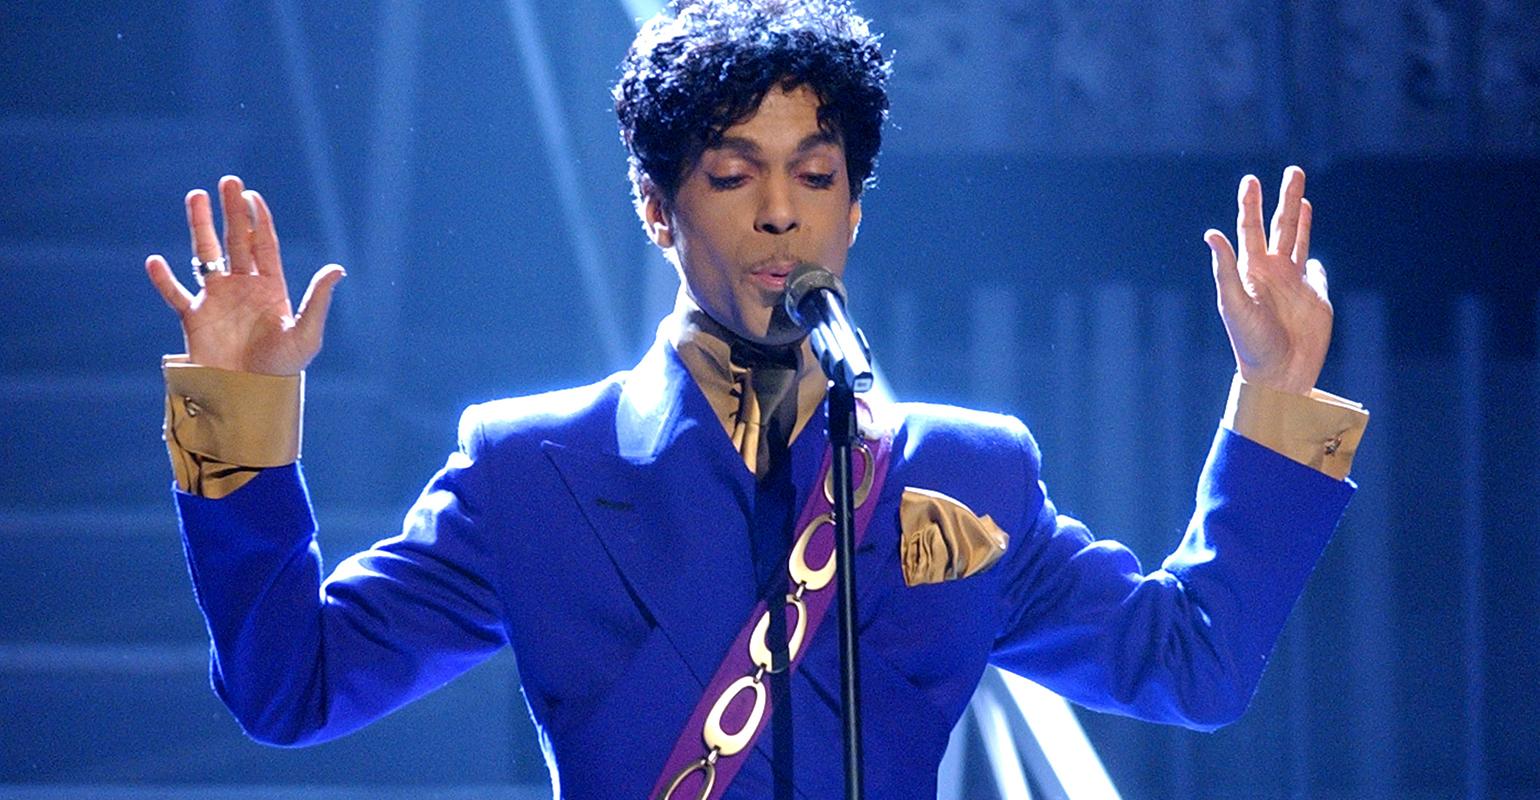 Prince singing